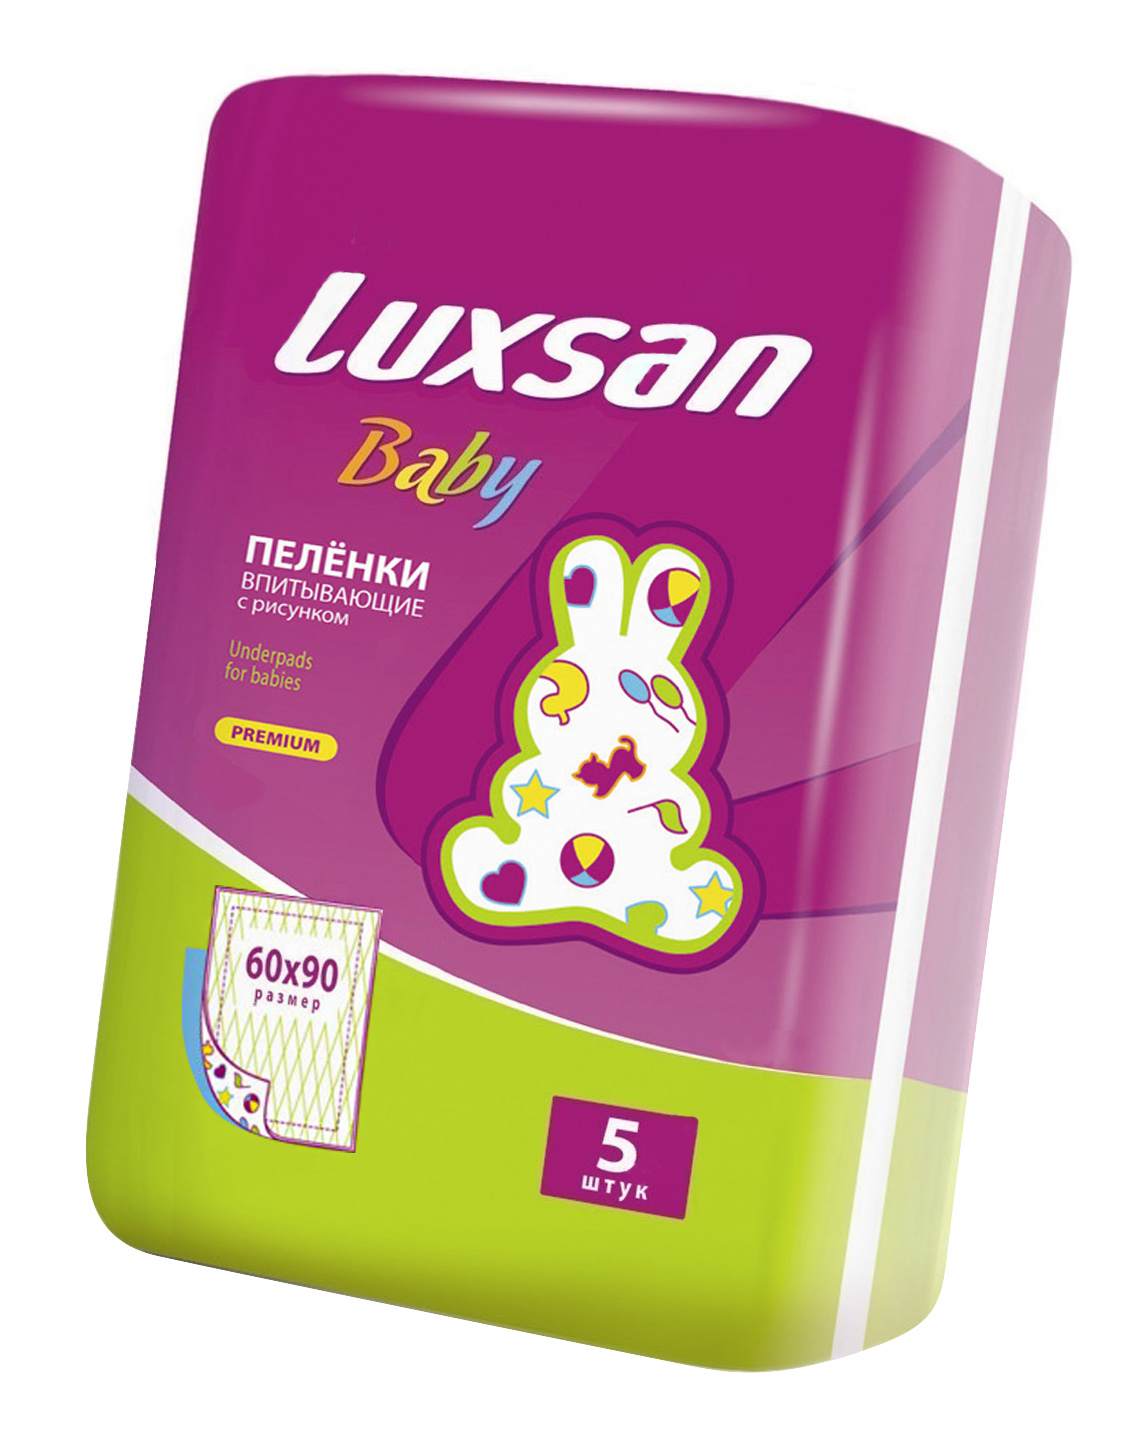 Пеленки для детей LUXSAN Baby с рисунком 60 х 90 см 5 шт.